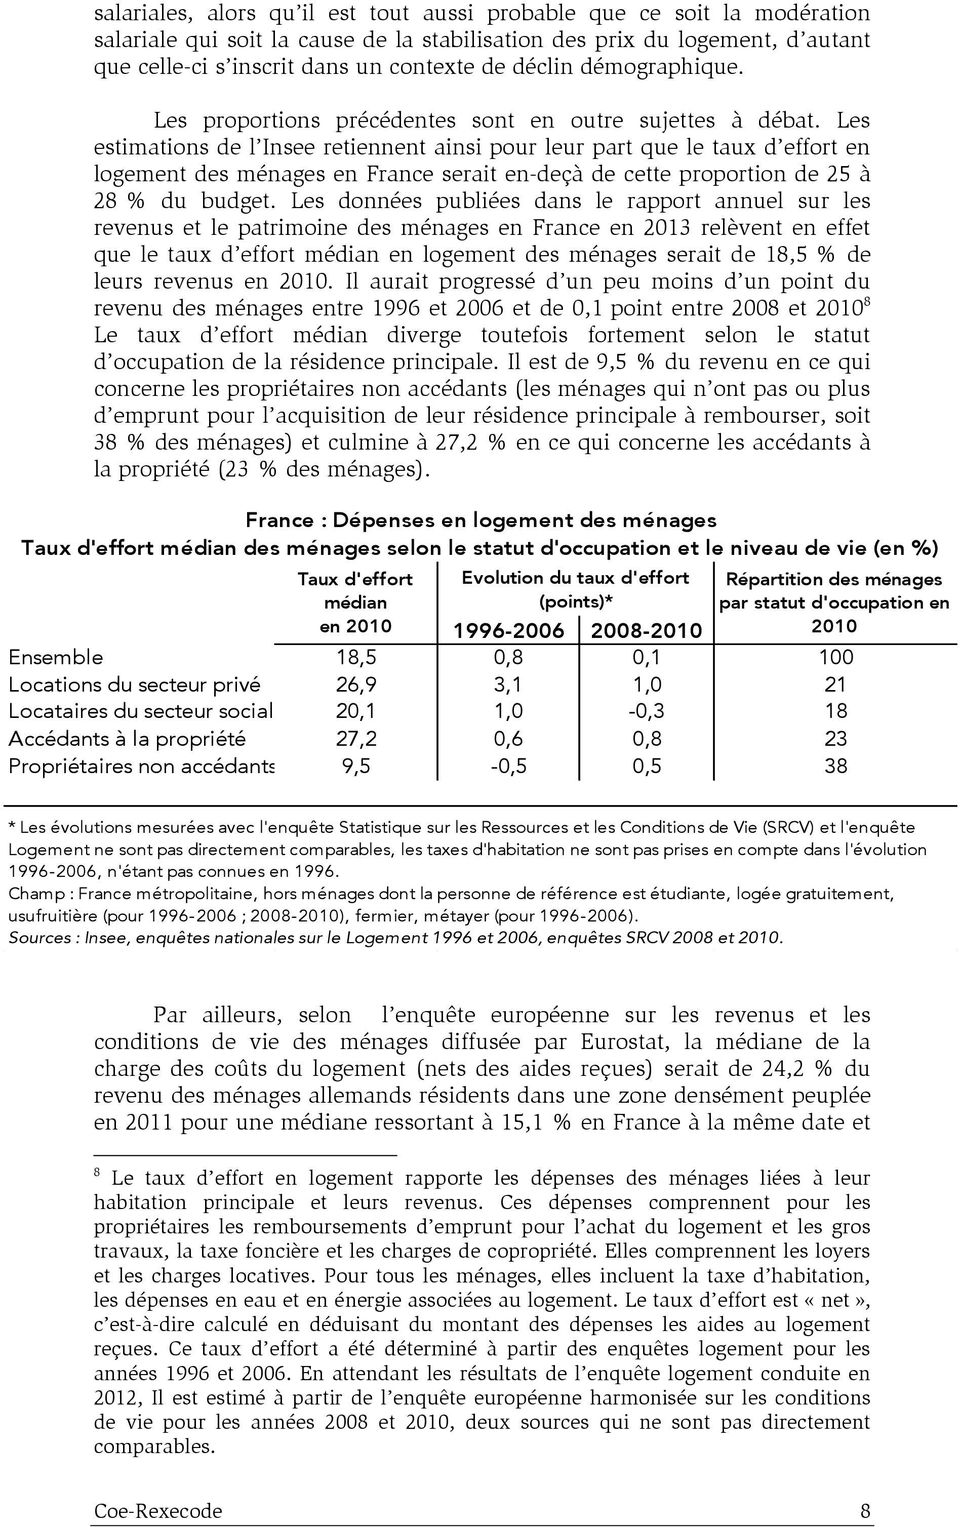 Les estimations de l Insee retiennent ainsi pour leur part que le taux d effort en logement des ménages en France serait en-deçà de cette proportion de 25 à 28 % du budget.